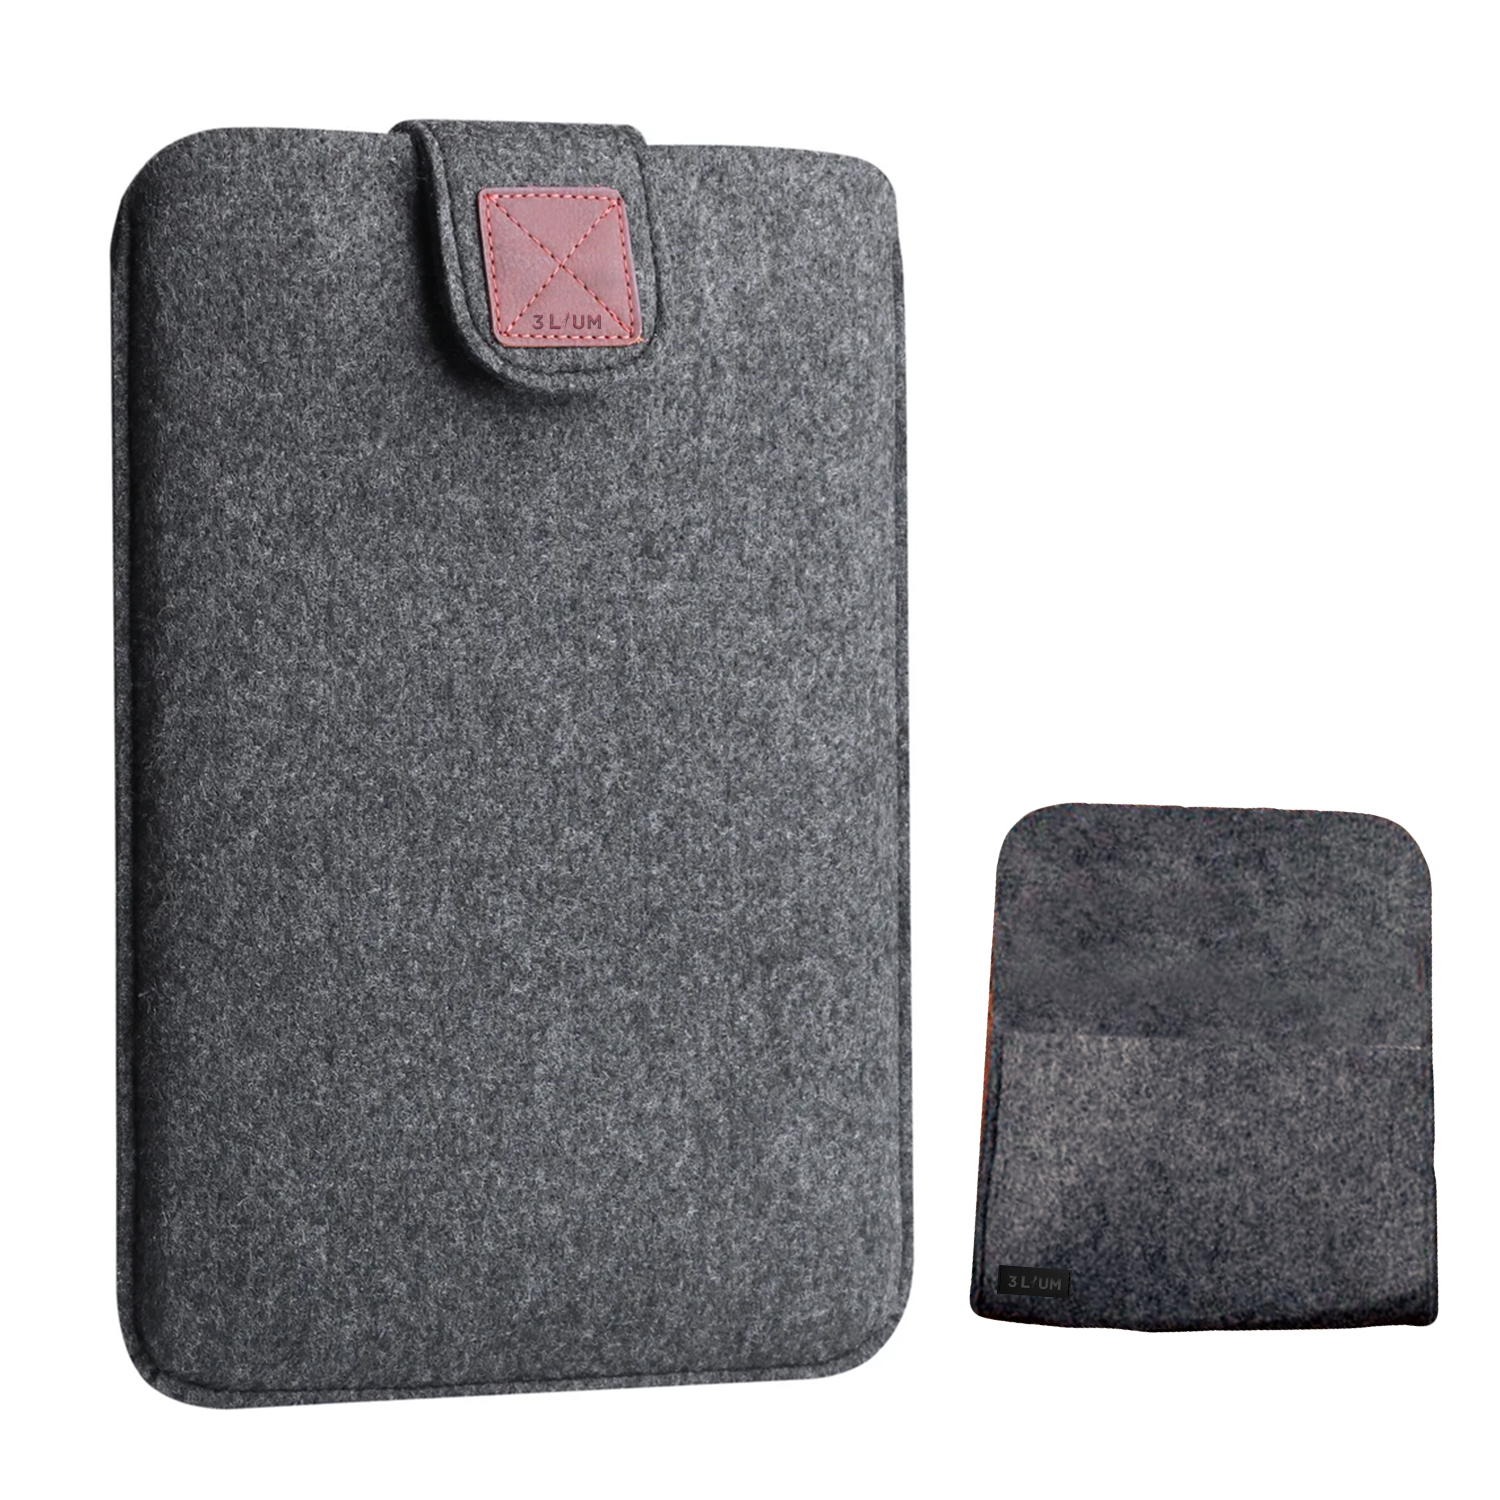 کاور لپ تاپ تریلیوم مدل Elegant مناسب برای لپ تاپ تا 12 اینچی به همراه کیف لوازم جانبی